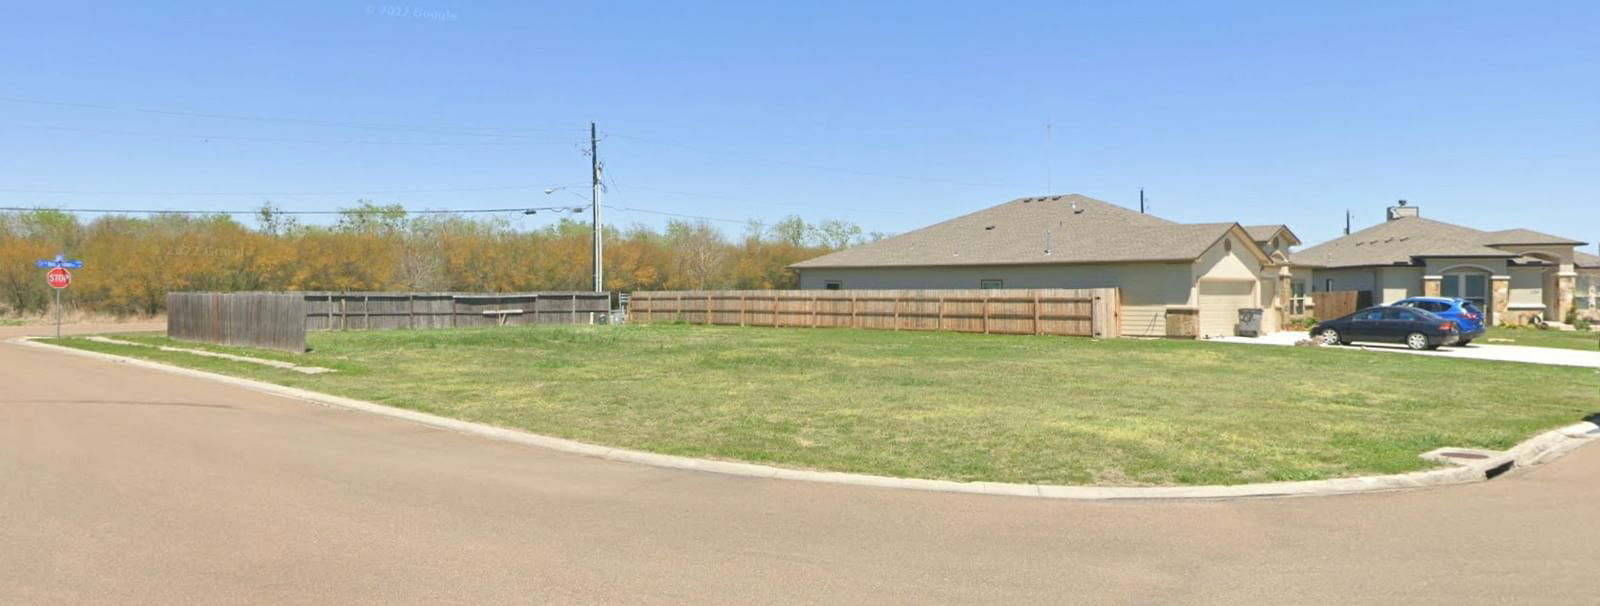 Real estate property located at 101 Alydar, Victoria, Fox Creek Sub Sec I, Victoria, TX, US